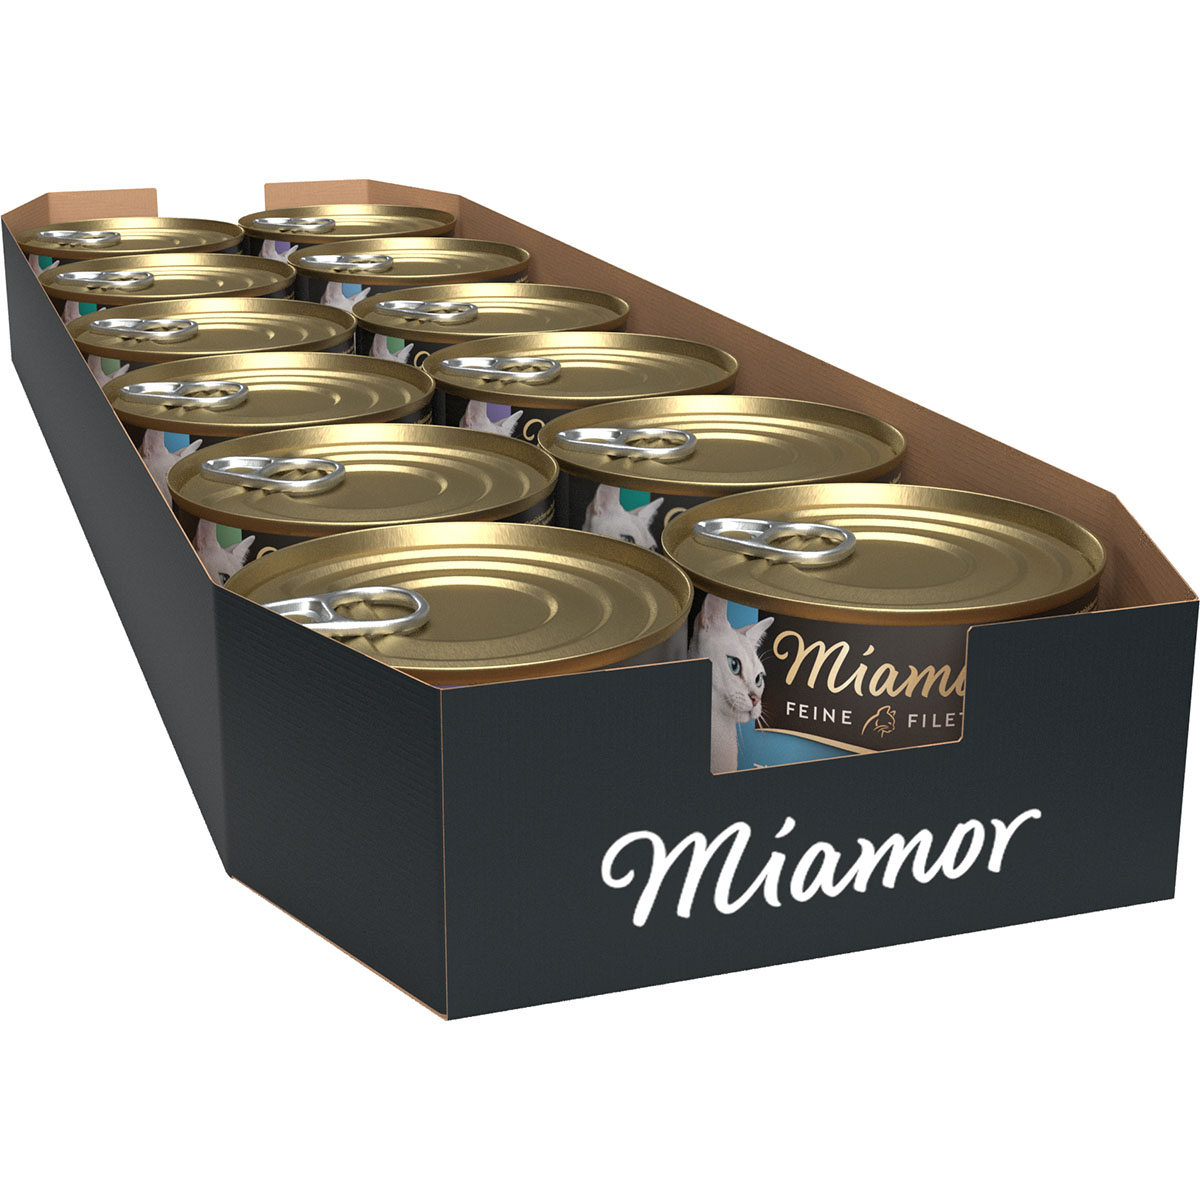 Miamor Feine Filets v želé, variace chutí 12 × 185 g